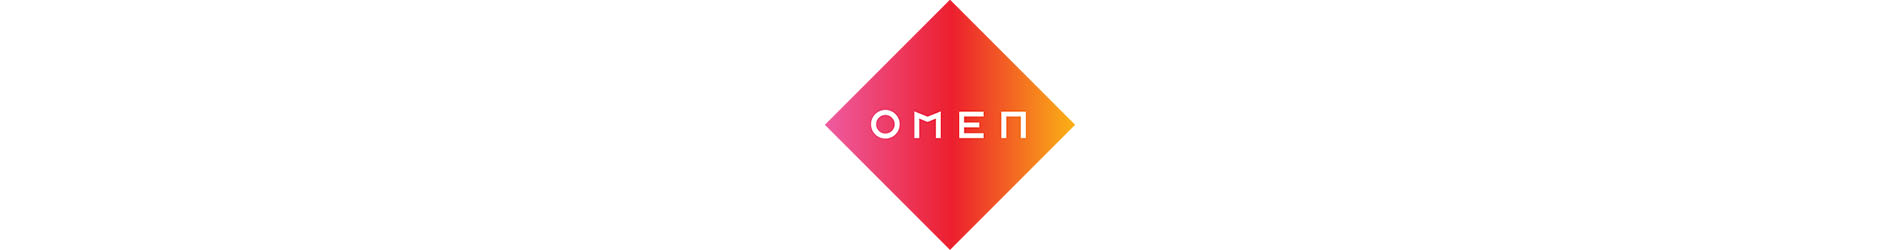 Omen Refresh Omen Logo